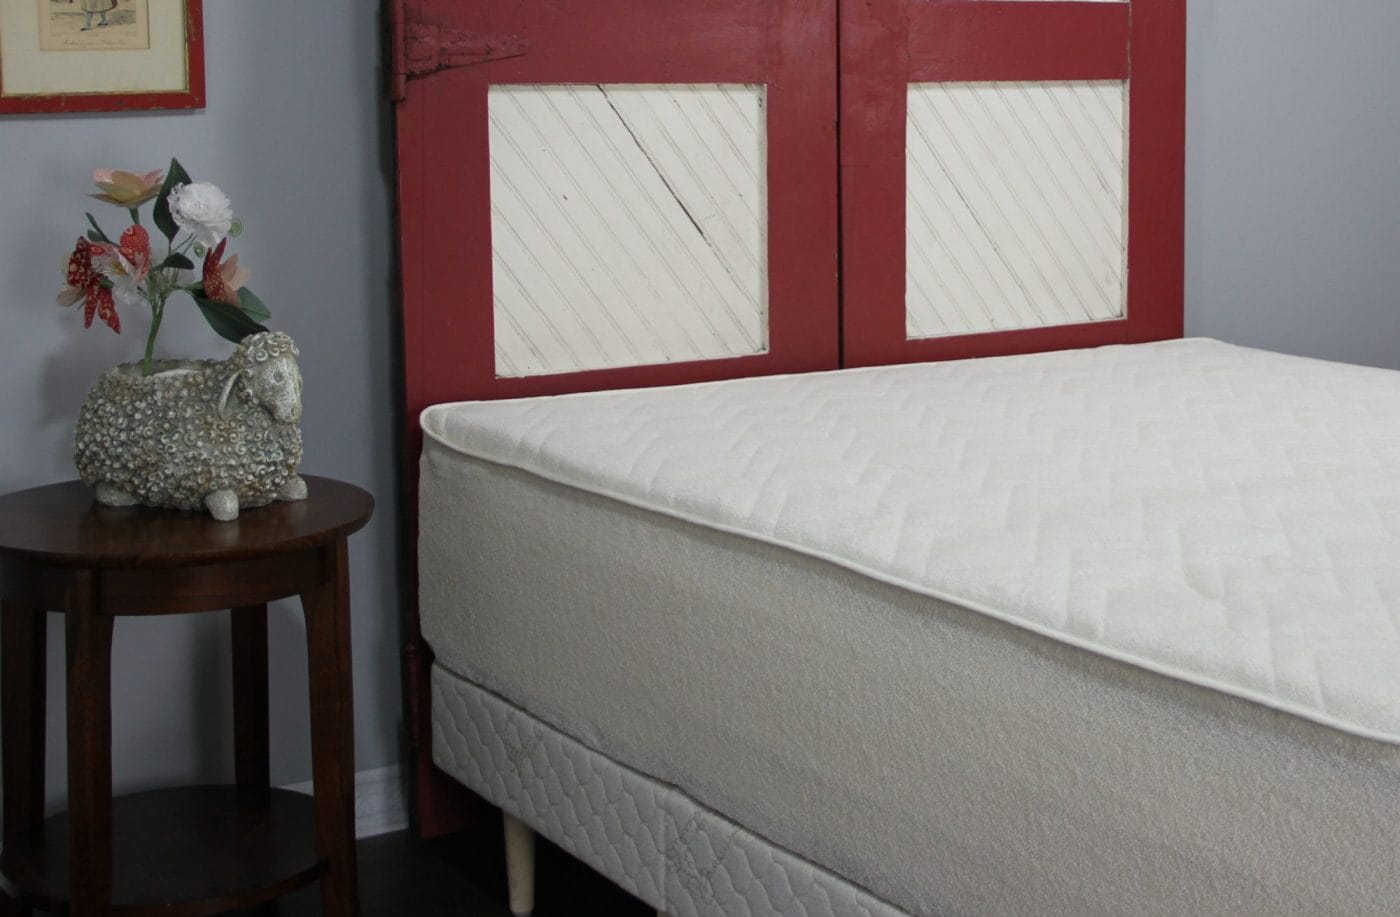 st dormeir mattress protector review